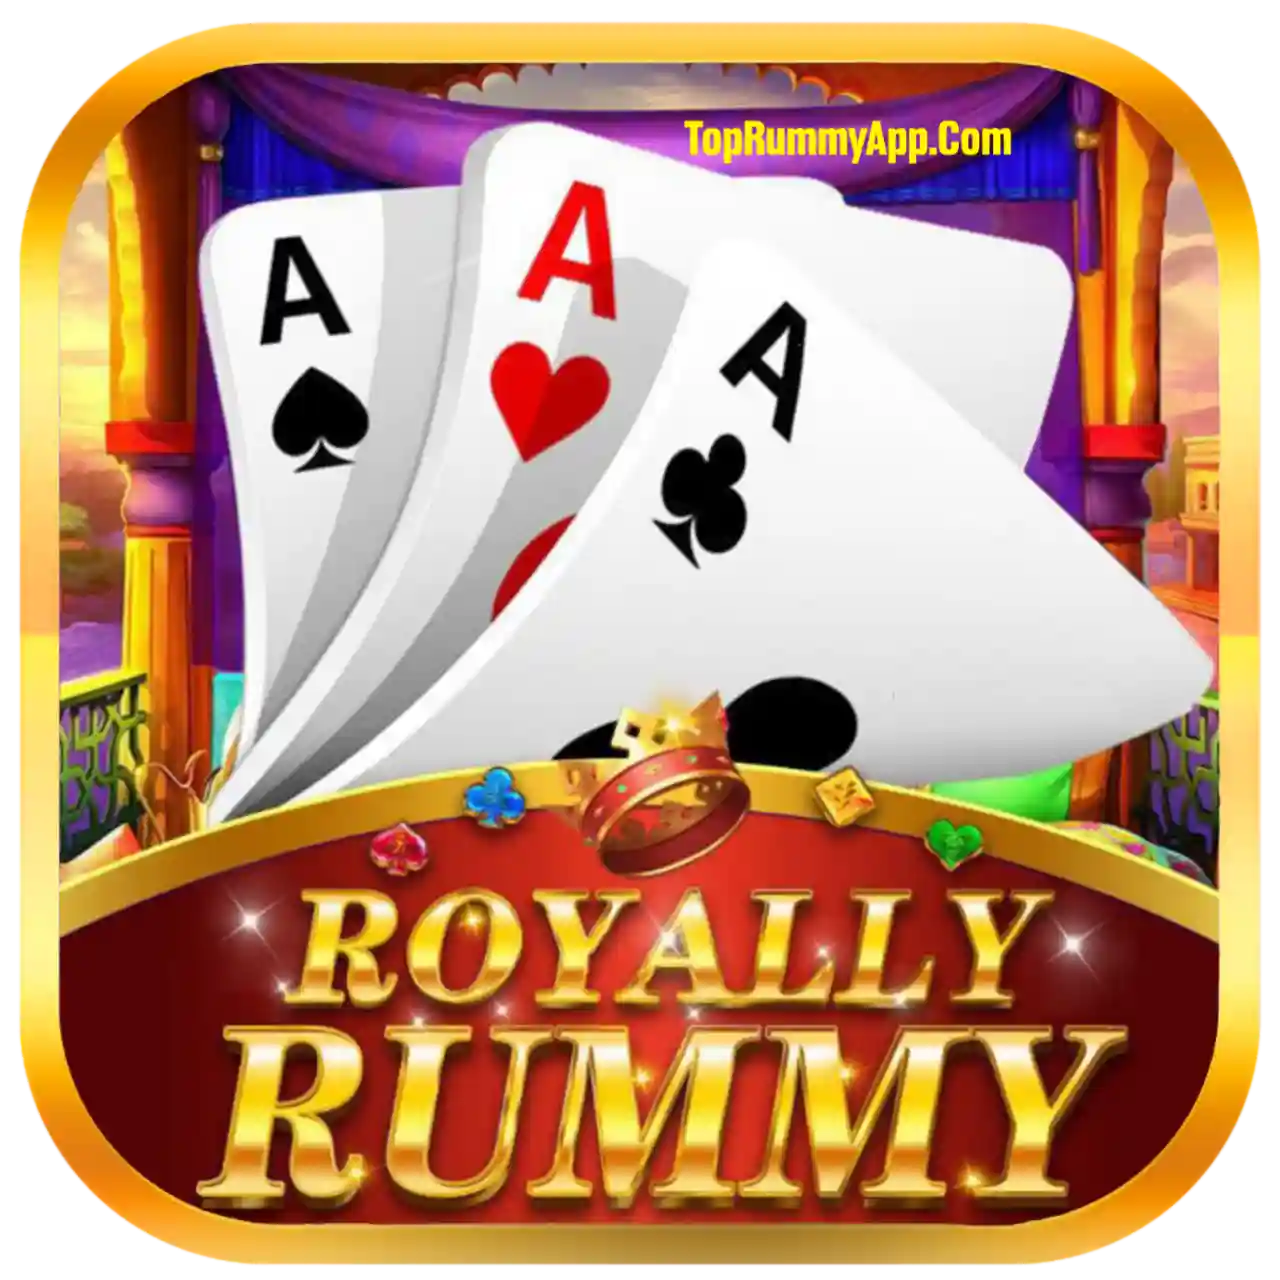 Royally Rummy Apk Download - Best Rummy Apps List 41 Bonus